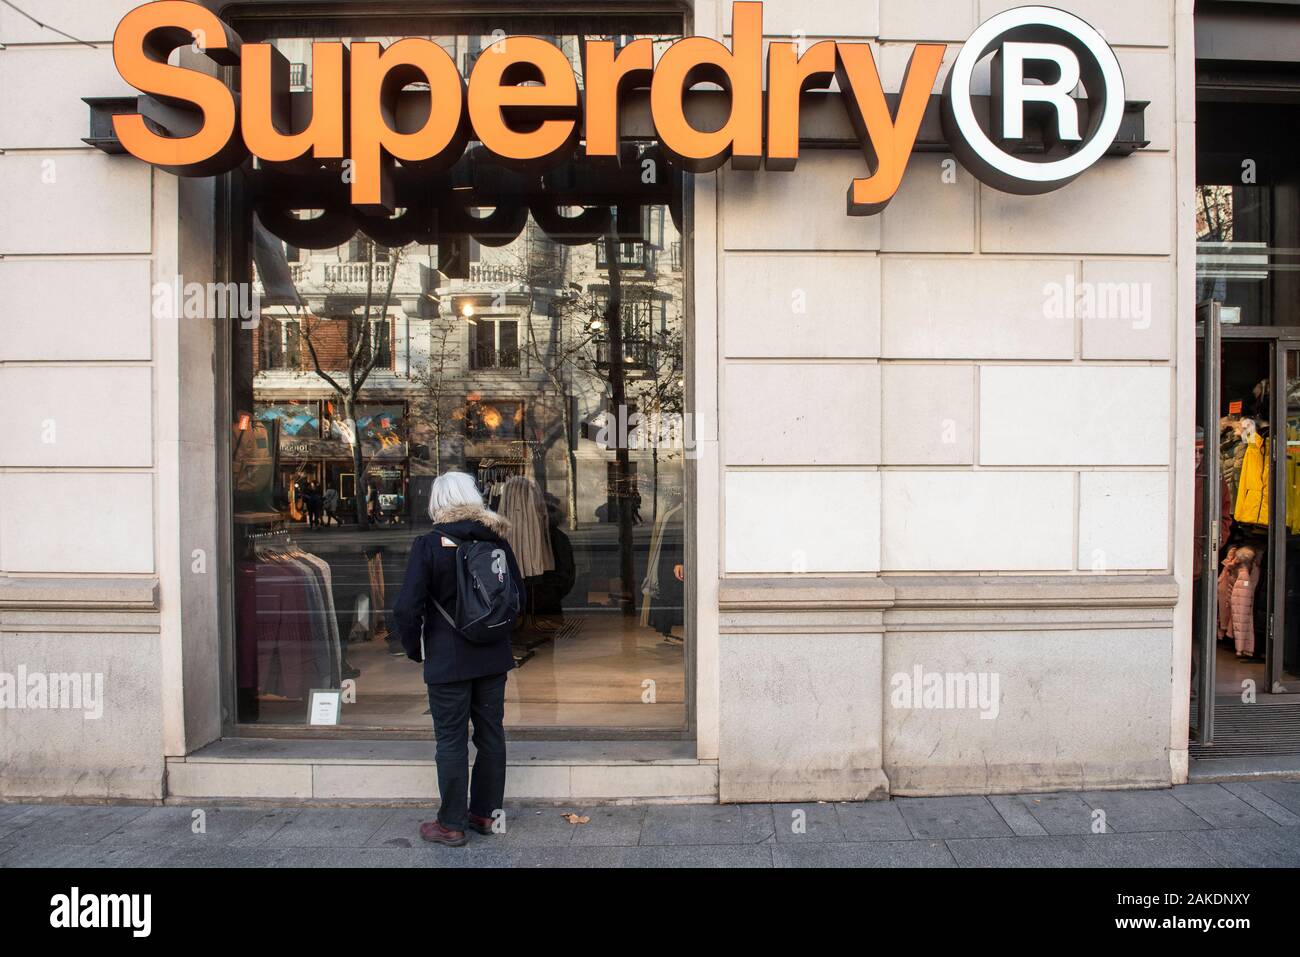 La marque de vêtements Superdry store vu en Espagne Photo Stock - Alamy